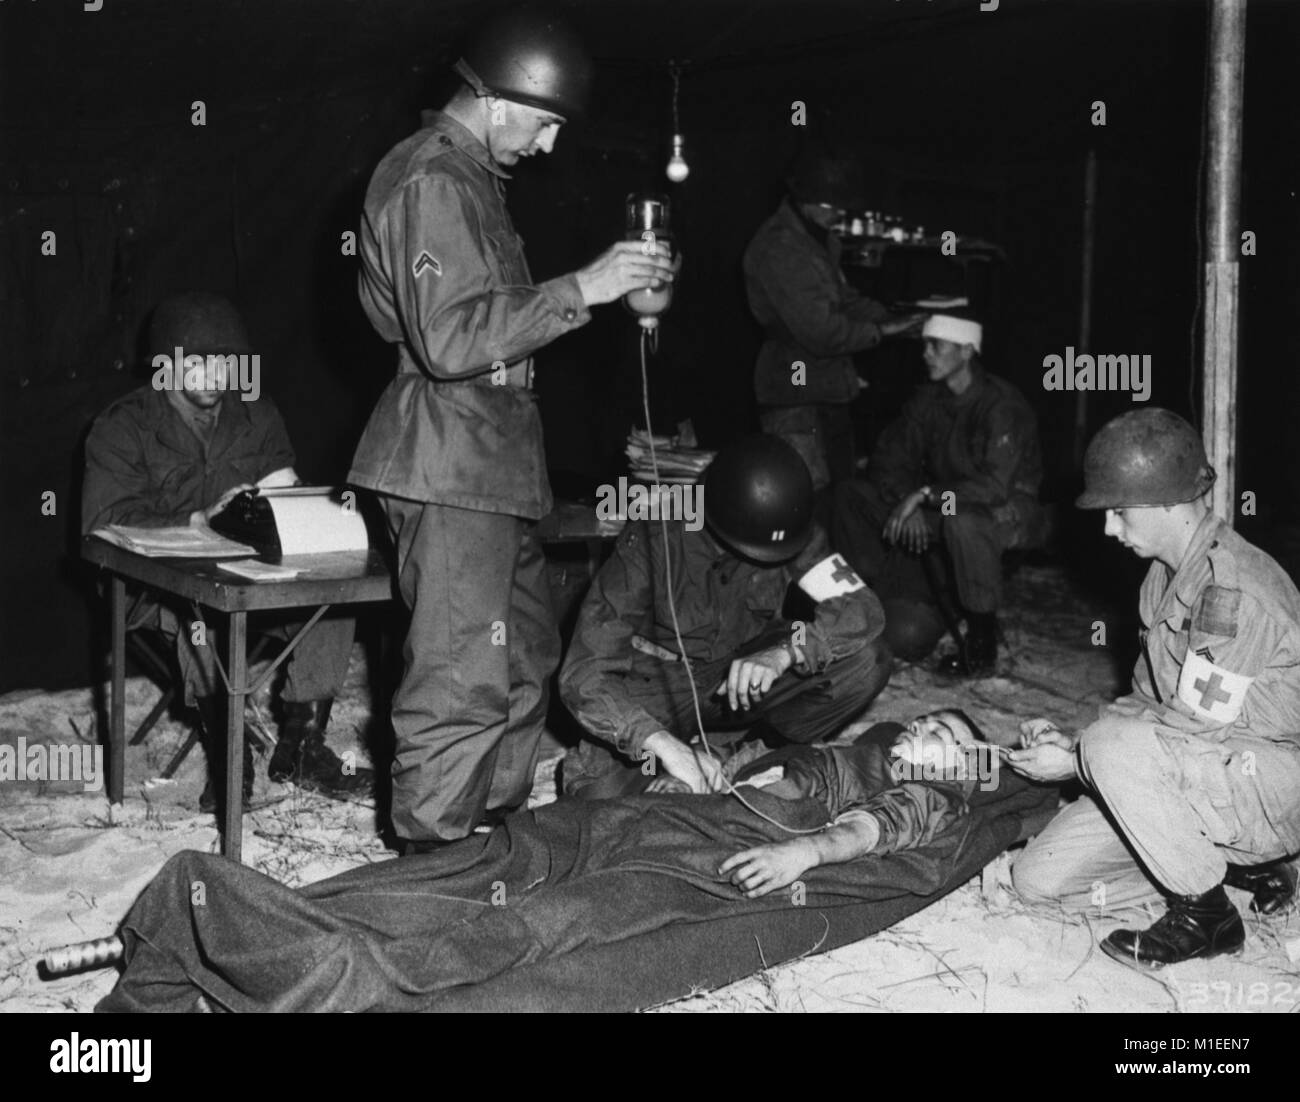 Die verwundeten Soldaten liegt auf einer Bahre in einem Zelt, 7. Dezember 1951. Drei Soldaten dazu neigen, den Patienten: Eine kniet und nimmt seinen Puls, ein anderer hockt und macht sich Notizen, und ein dritter steht und hält ein Glas IV mit einer Flüssigkeit, die angezeigt wird, ein Produkt zu sein, vielleicht Plasma. Hinter ihnen eine andere verwundete Soldaten gepflegt wird, während ein anderer an einem Tisch und Typen sitzt, Washington DC. Mit freundlicher Genehmigung der nationalen Bibliothek für Medizin. () Stockfoto